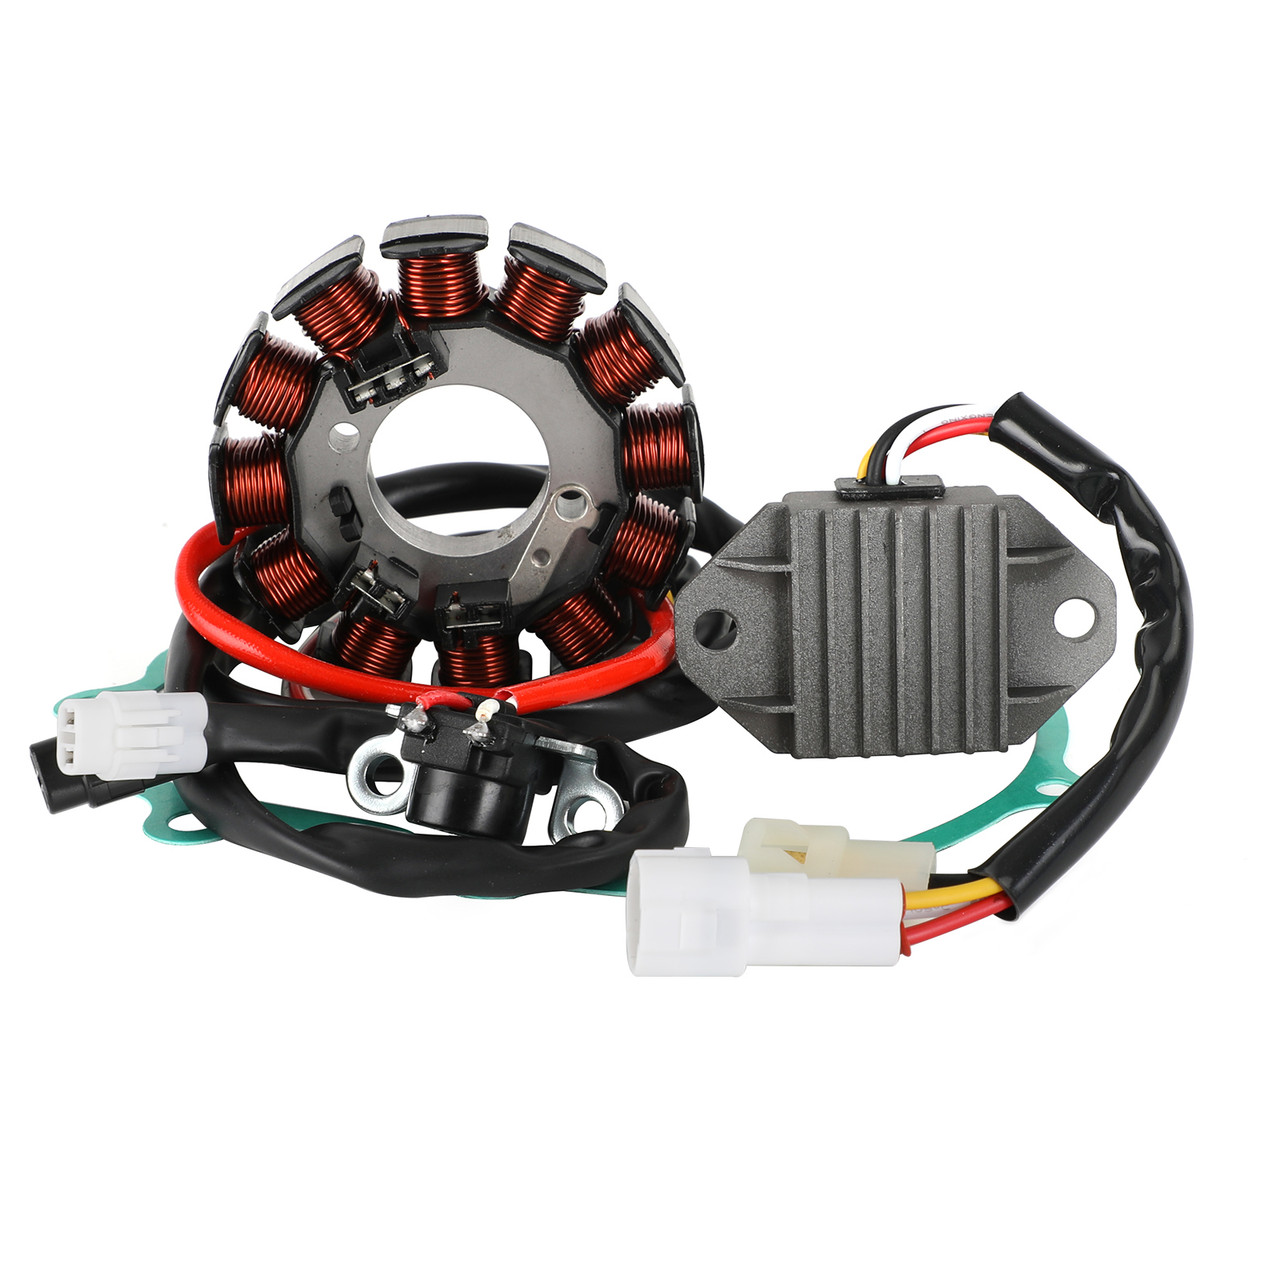 Magneto Coil Stator + Voltage Regulator + Gasket Assy Fit for GAS GAS EC250 EC250F Enduro 4T 2013-2015 EC300 EC300F Racing 4T 2015